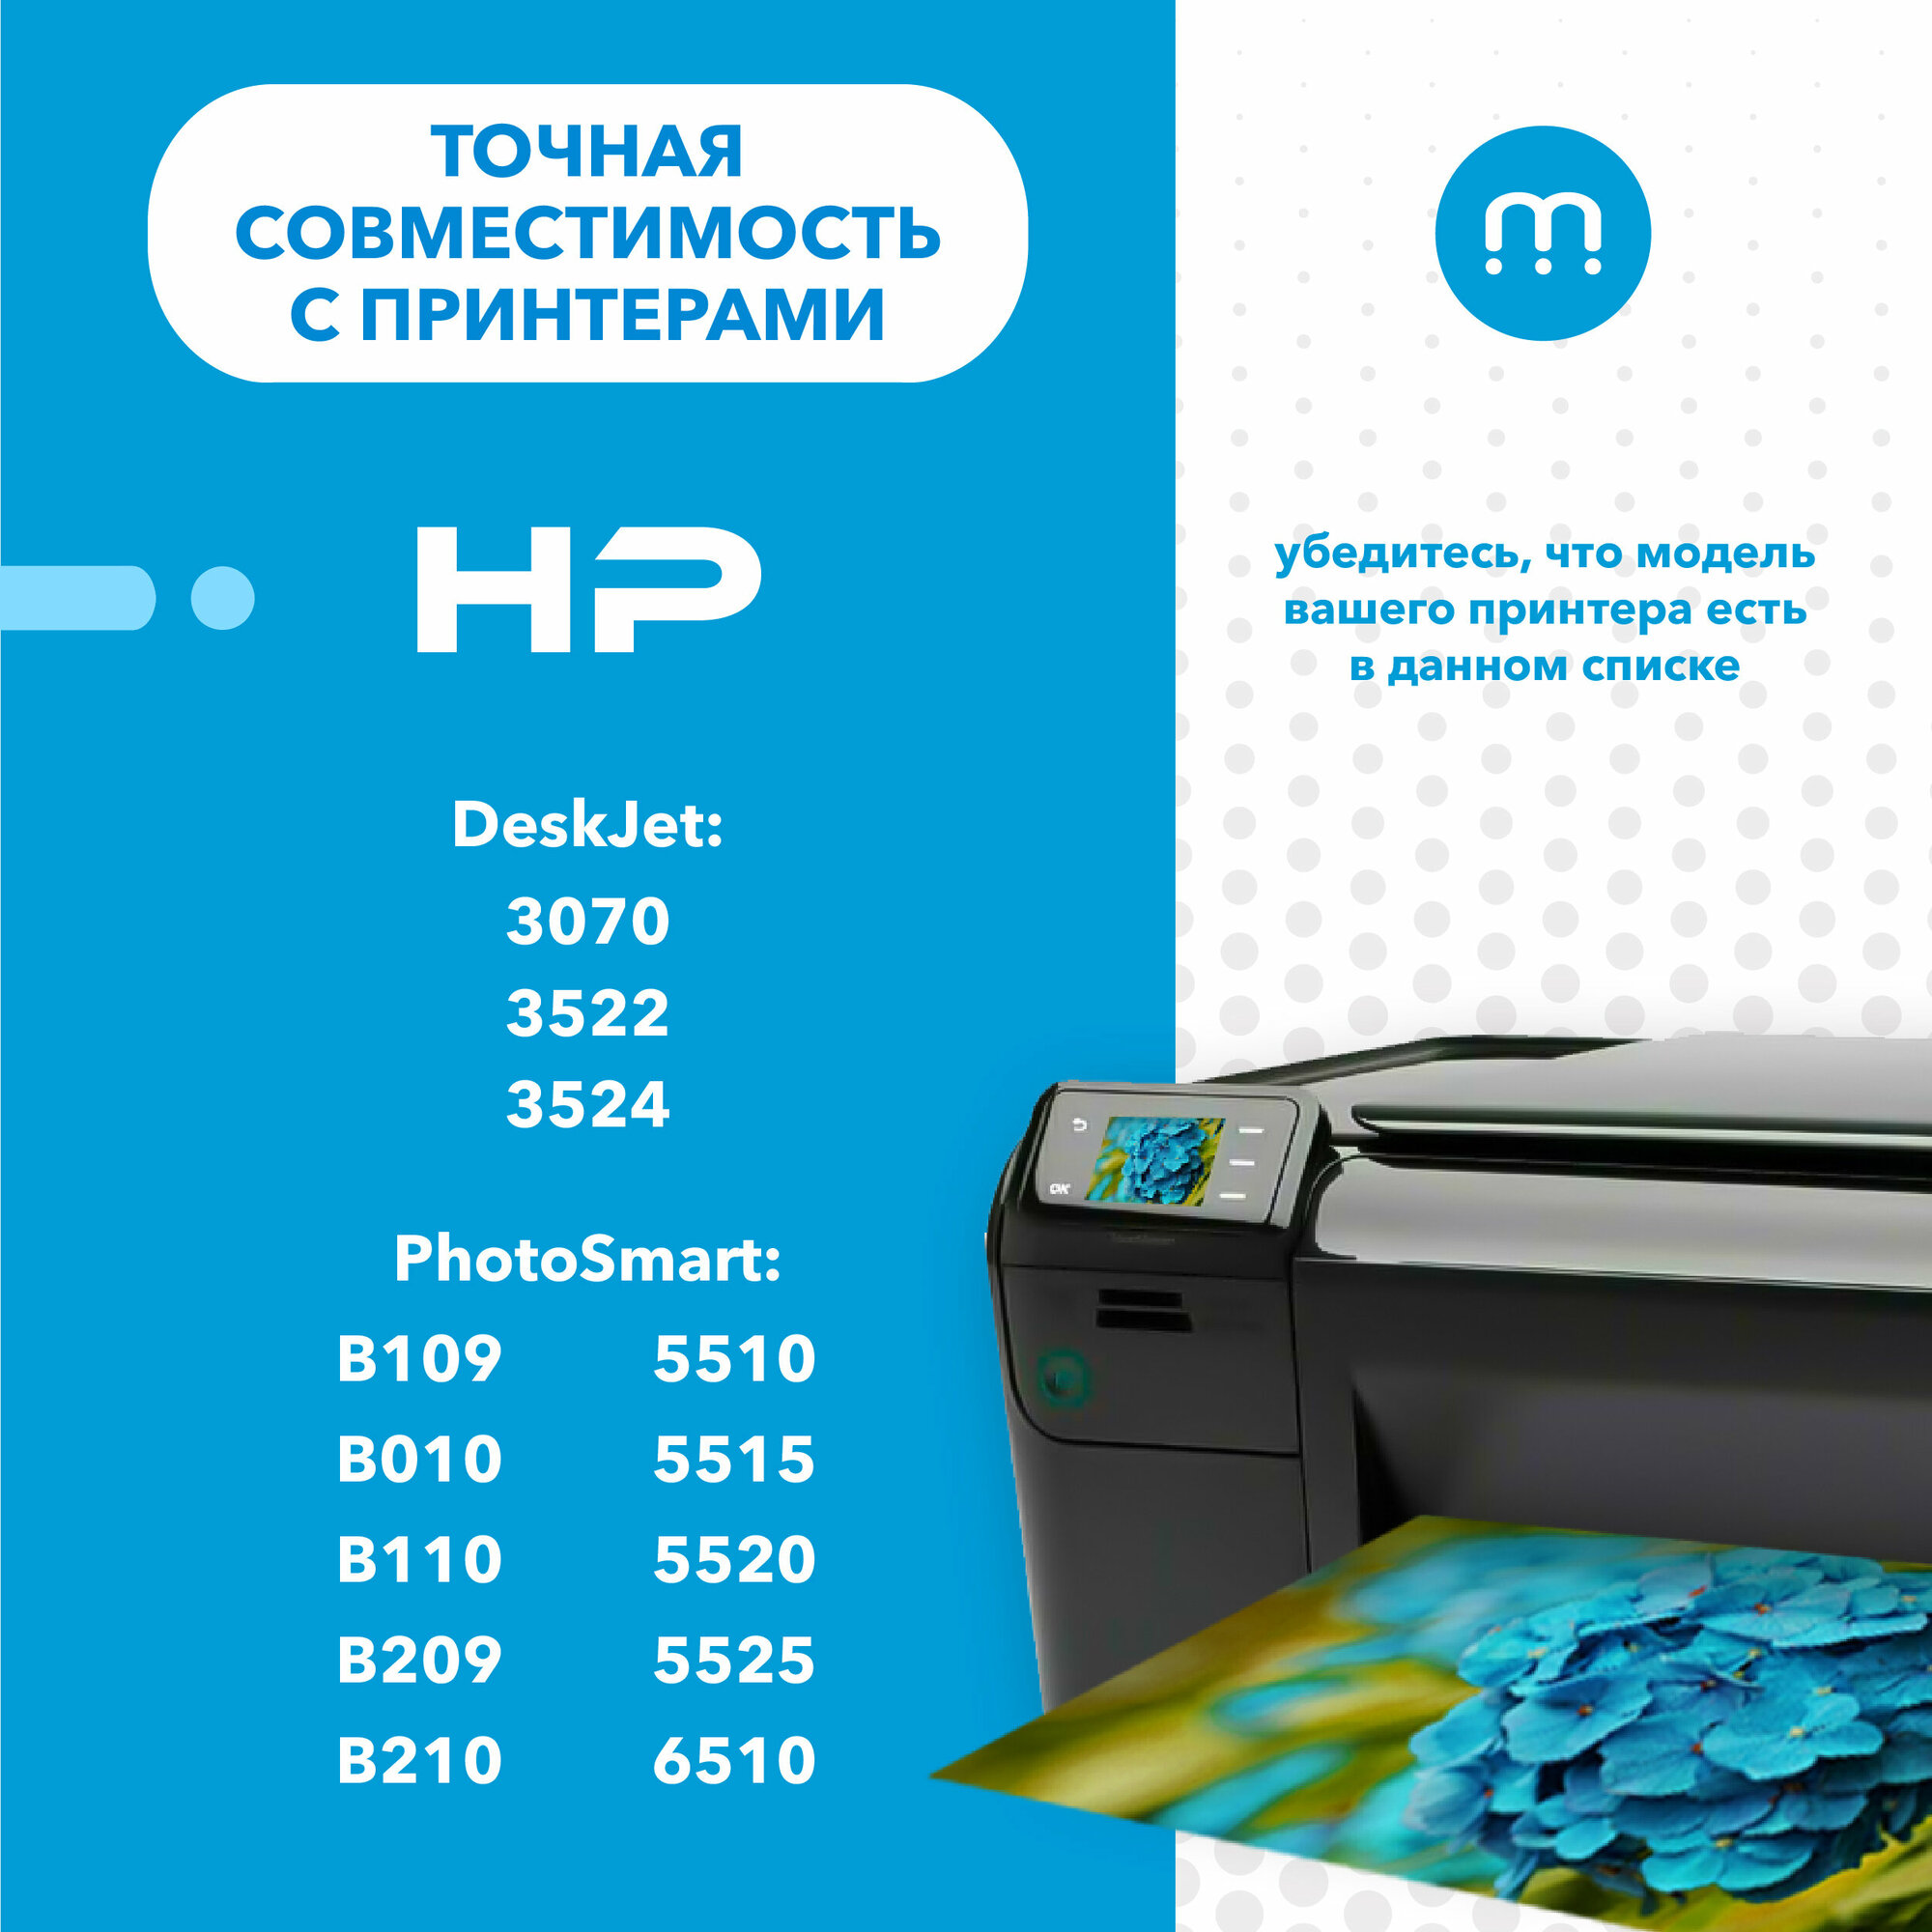 Комплект картриджей HP 178 и XL для струйного принтера HP PhotoSmart 5510 5515 6510 B010 B109 B110 B210 / DeskJet 3070 3524 и др, 4 цвета, Inkmaster